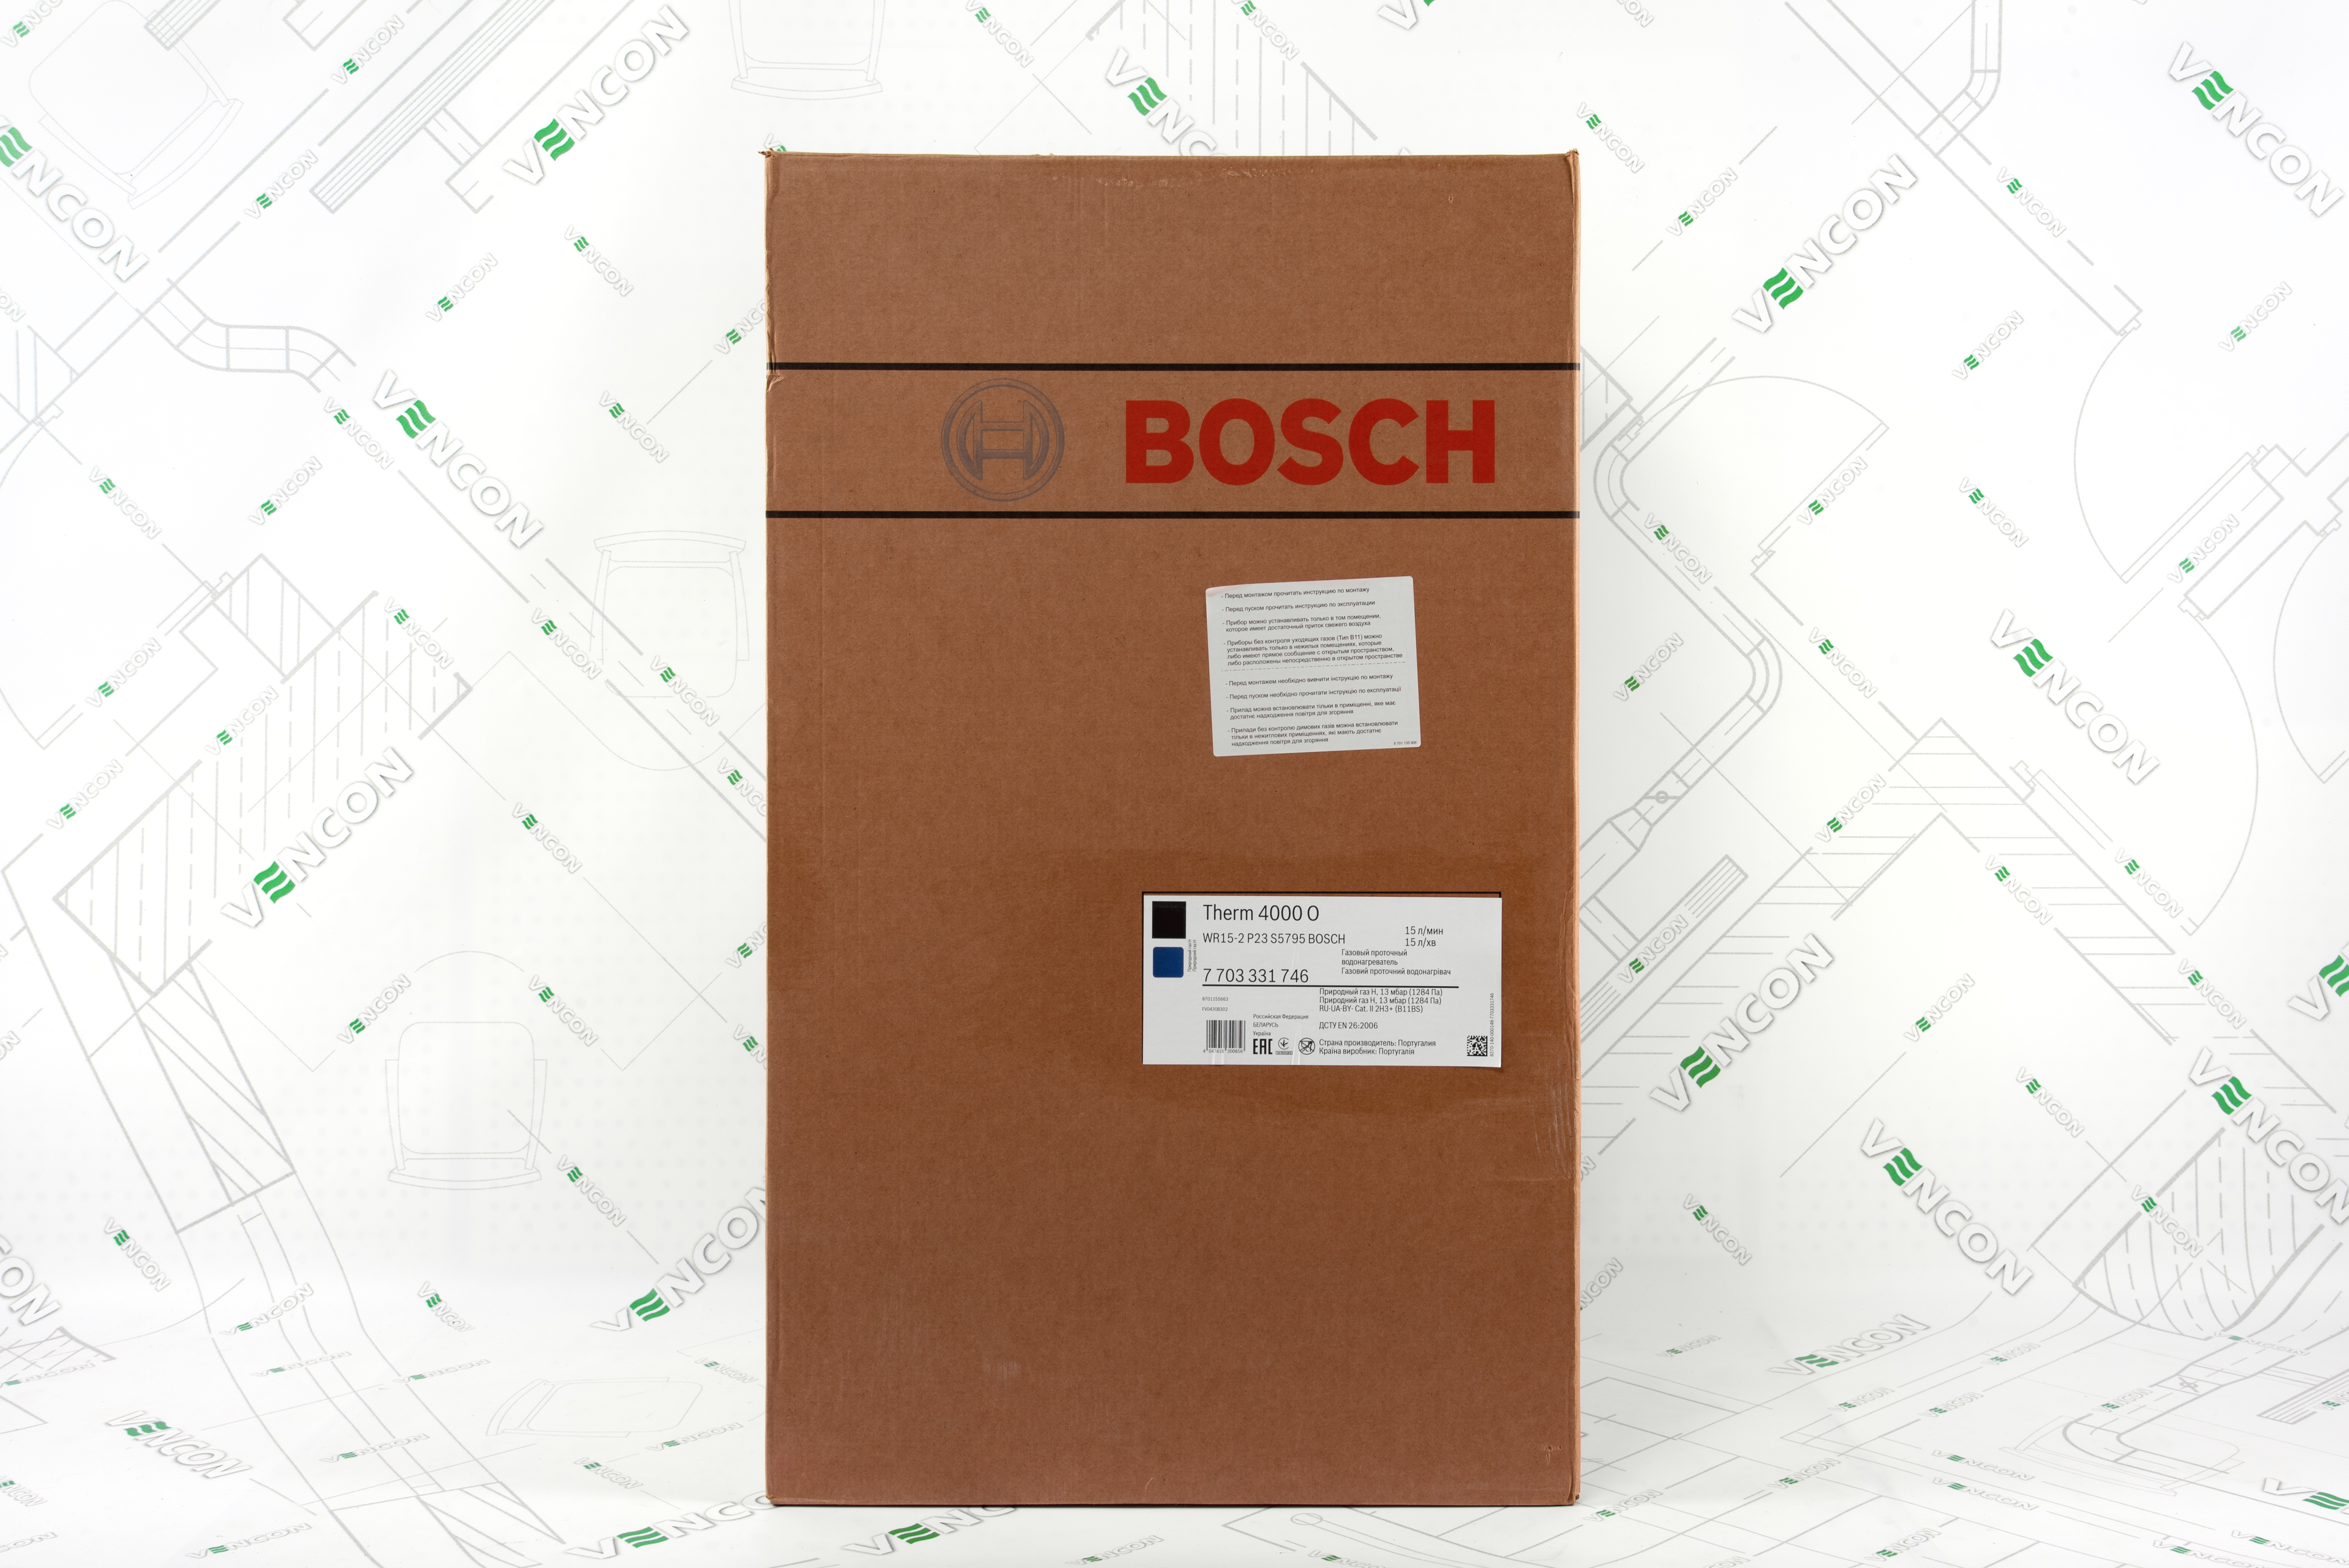 обзор товара Газовая колонка Bosch Therm 4000 O WR 15-2 P (7703331746) - фотография 12